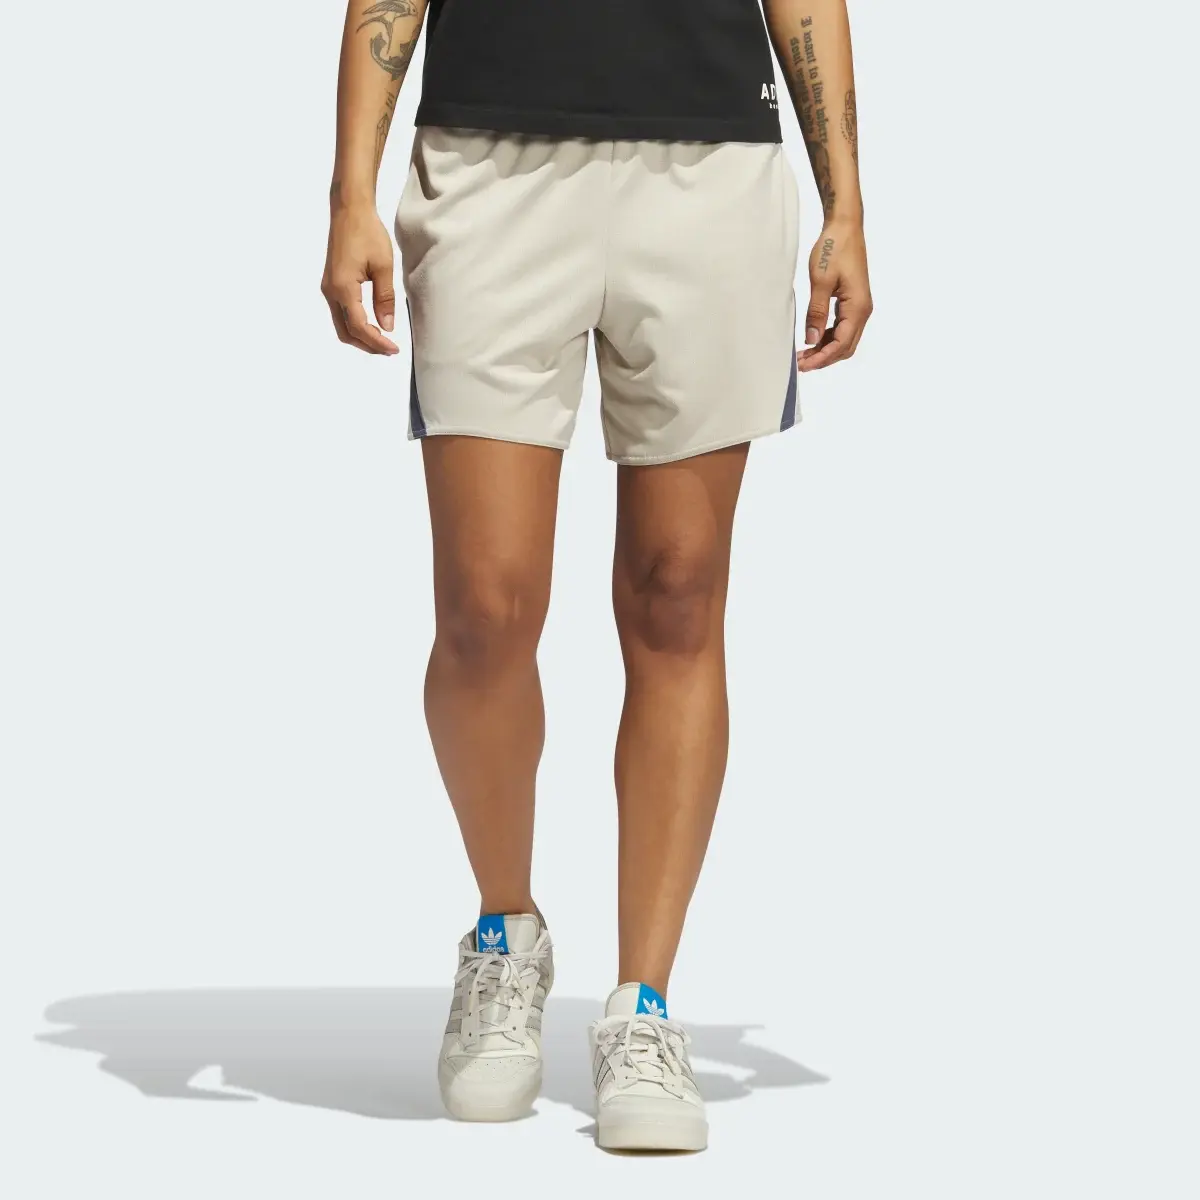 Adidas Select Basketball Shorts. 1